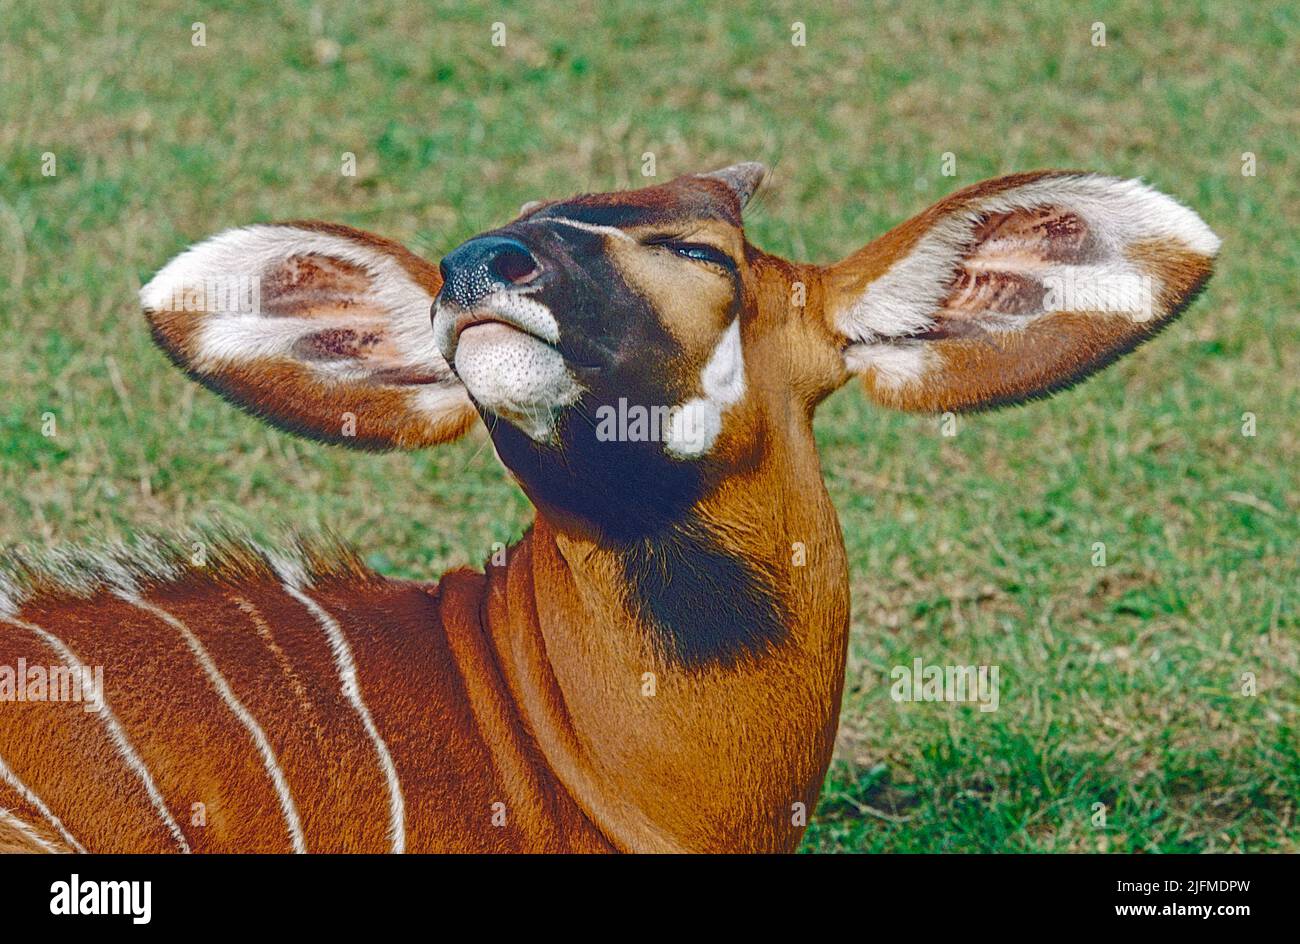 Juvenil Bongo (Tragelaphus eurycerus) de África Central y Occidental. Revelando el tamaño de sus orejeras cuando sacude su cabeza. Foto de stock